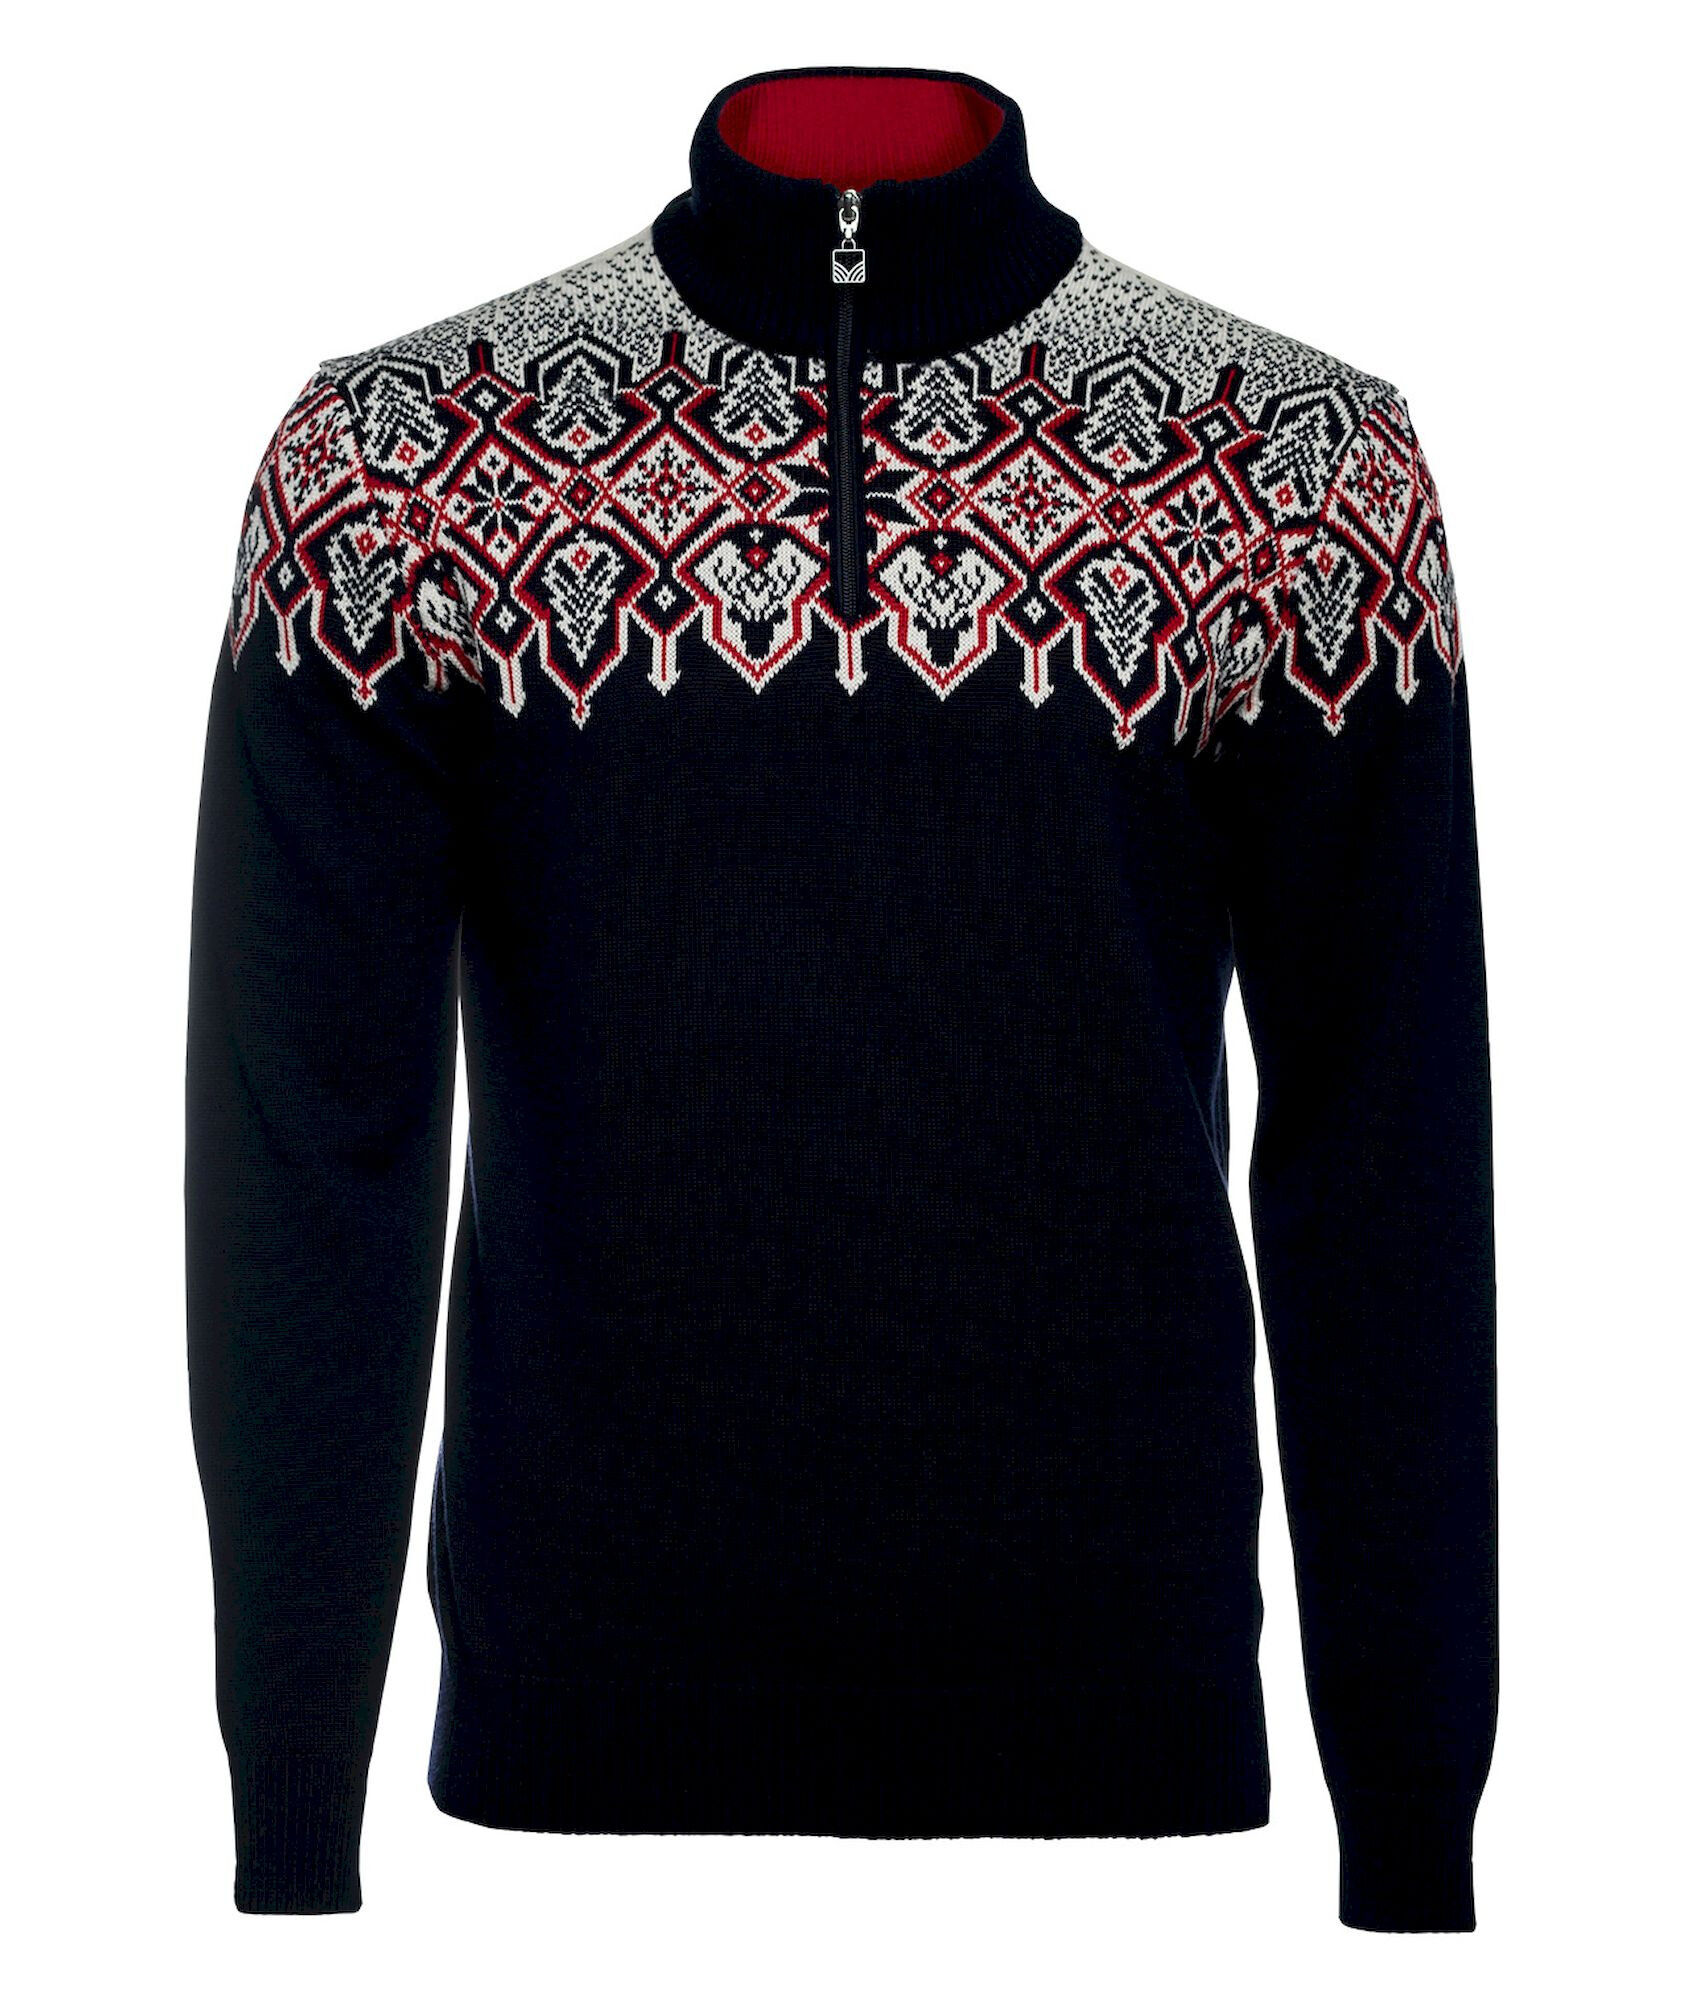 Dale of Norway Winterland Sweater - Jerséis de lana merina - Hombre | Hardloop